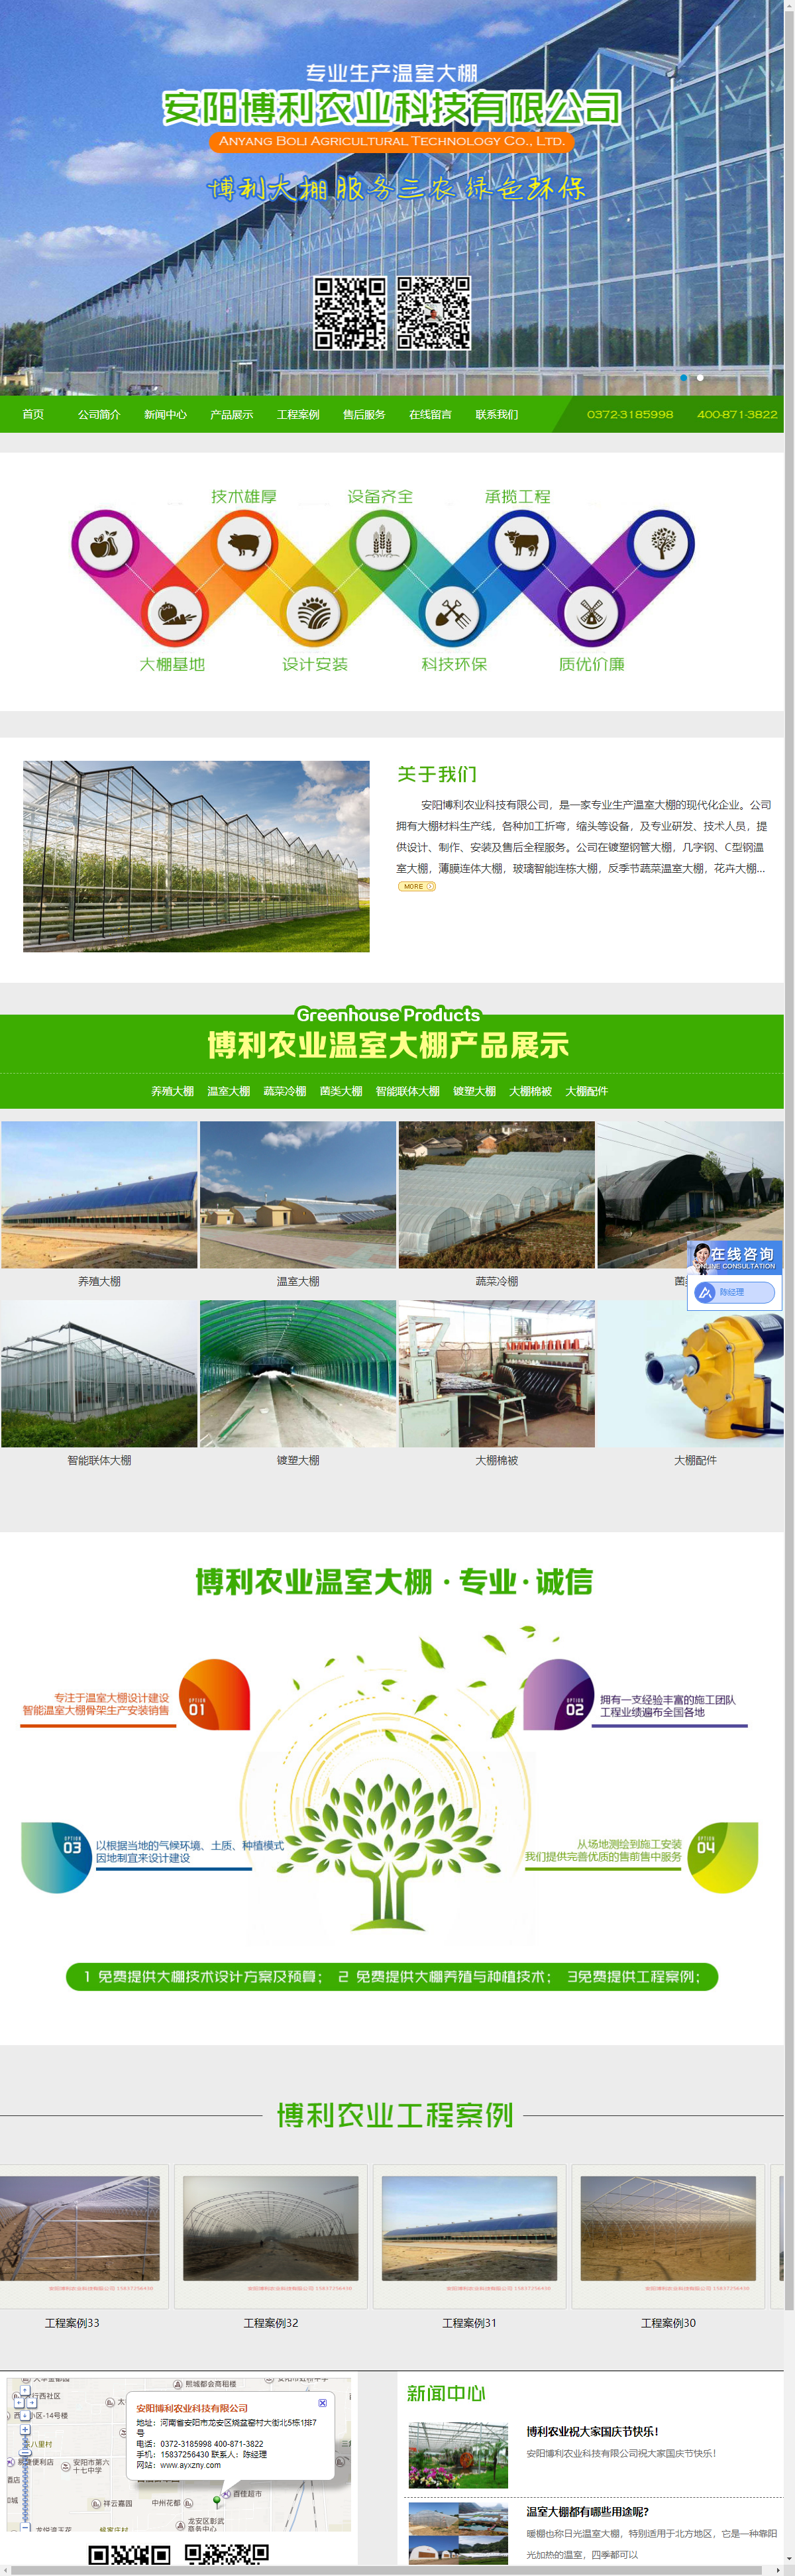 安阳博利农业科技有限公司网站案例